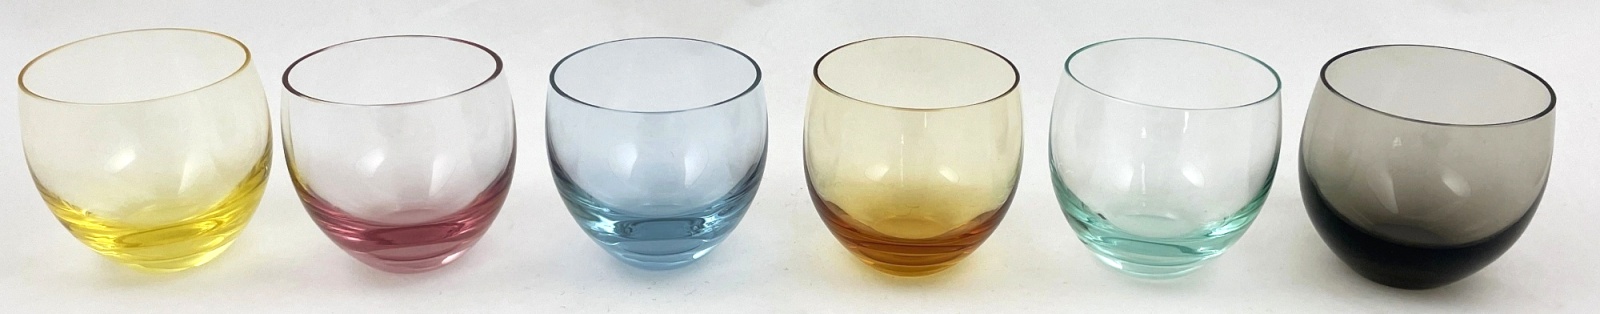 Šest barevných skleniček – Moser, Culbuto